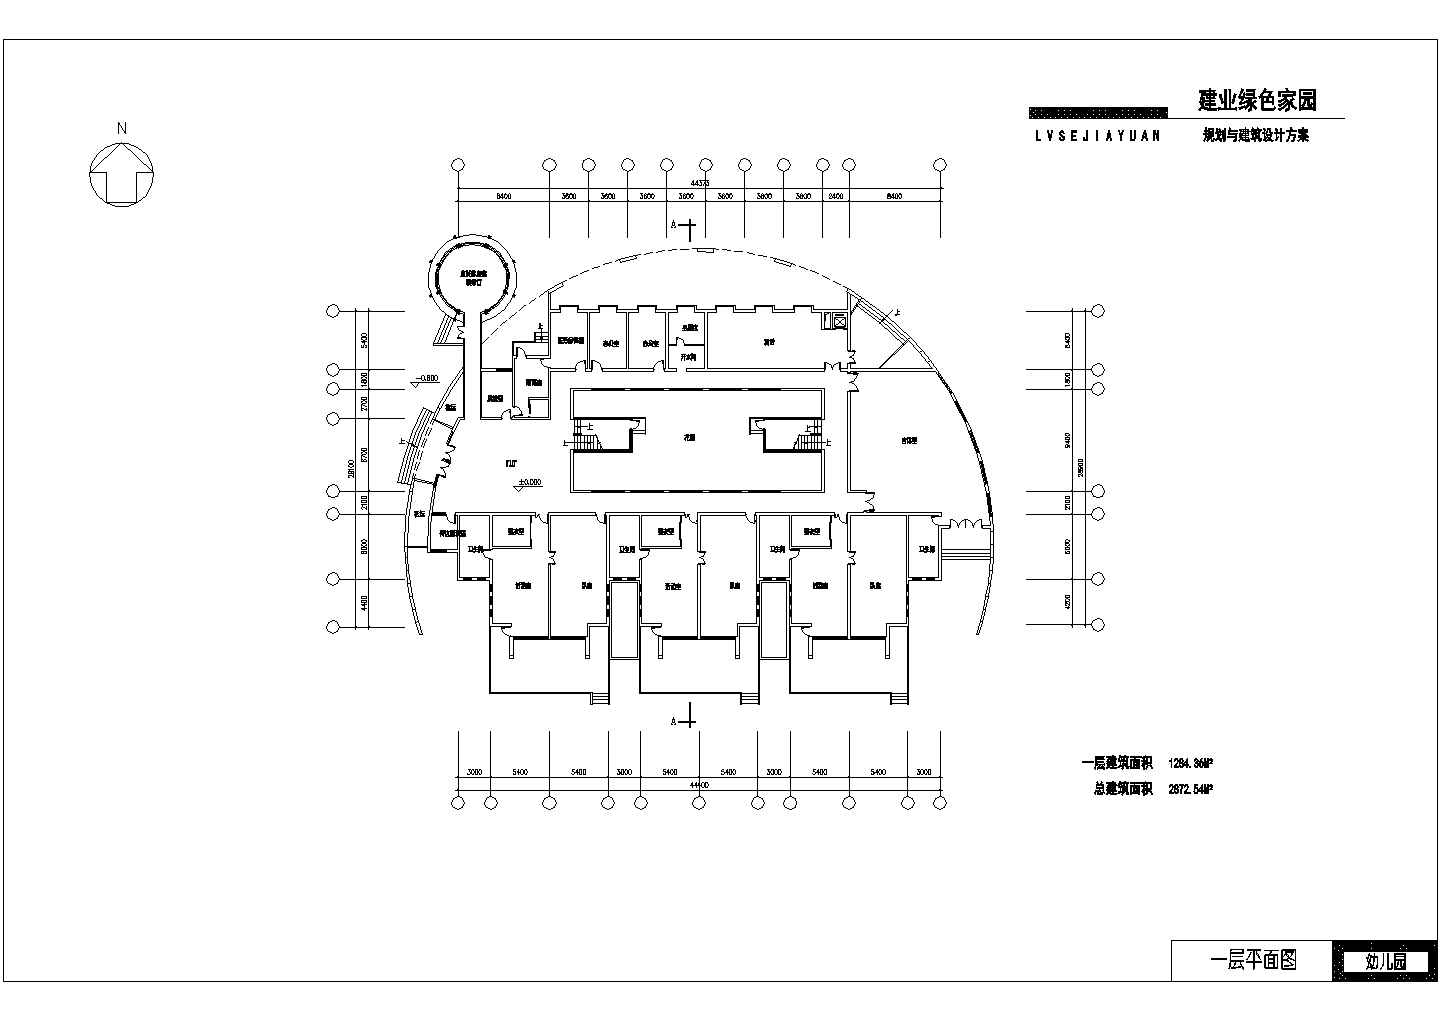 9班3层2872.54平米绿色家园幼儿园建筑设计方案图【含JPG外观效果图】